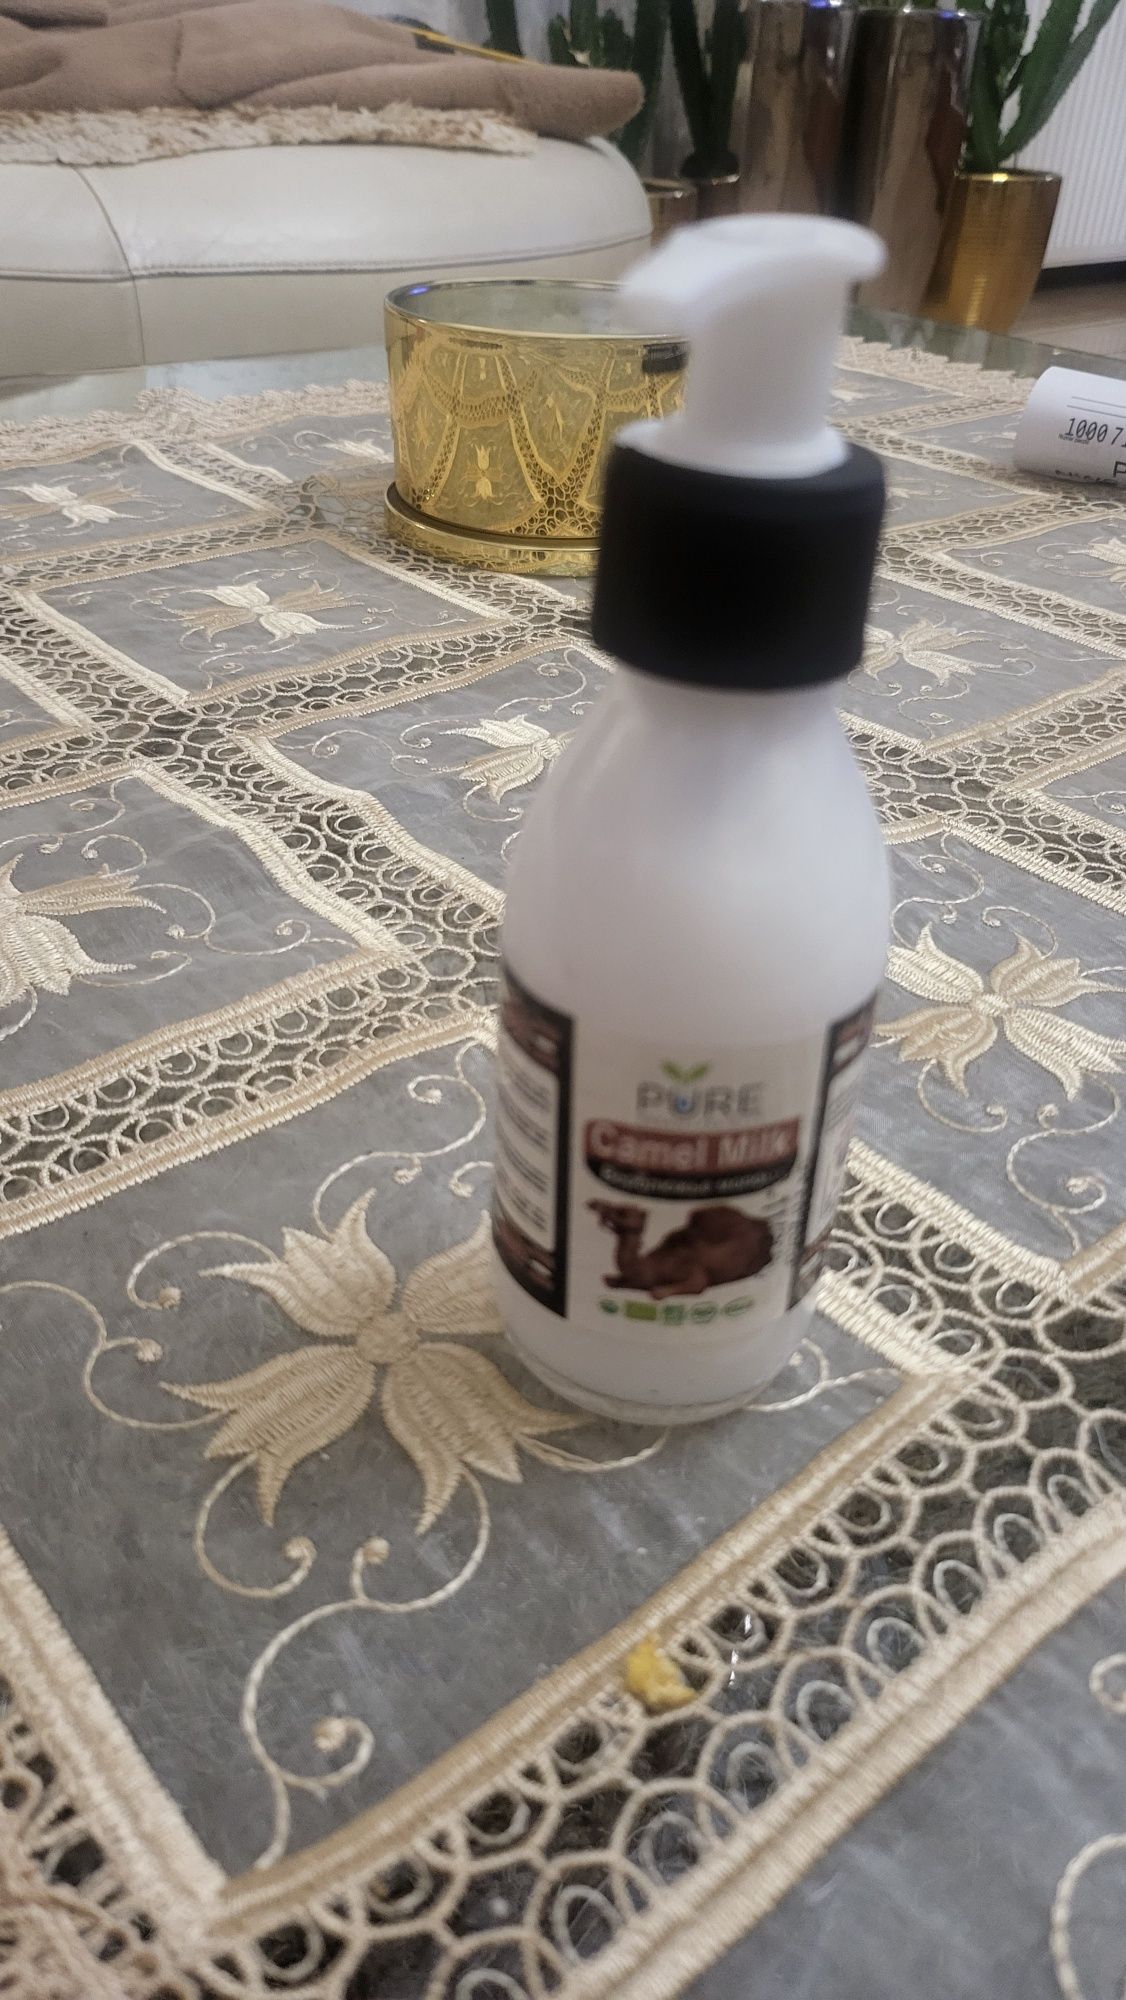 Camel milk  firmy Pur